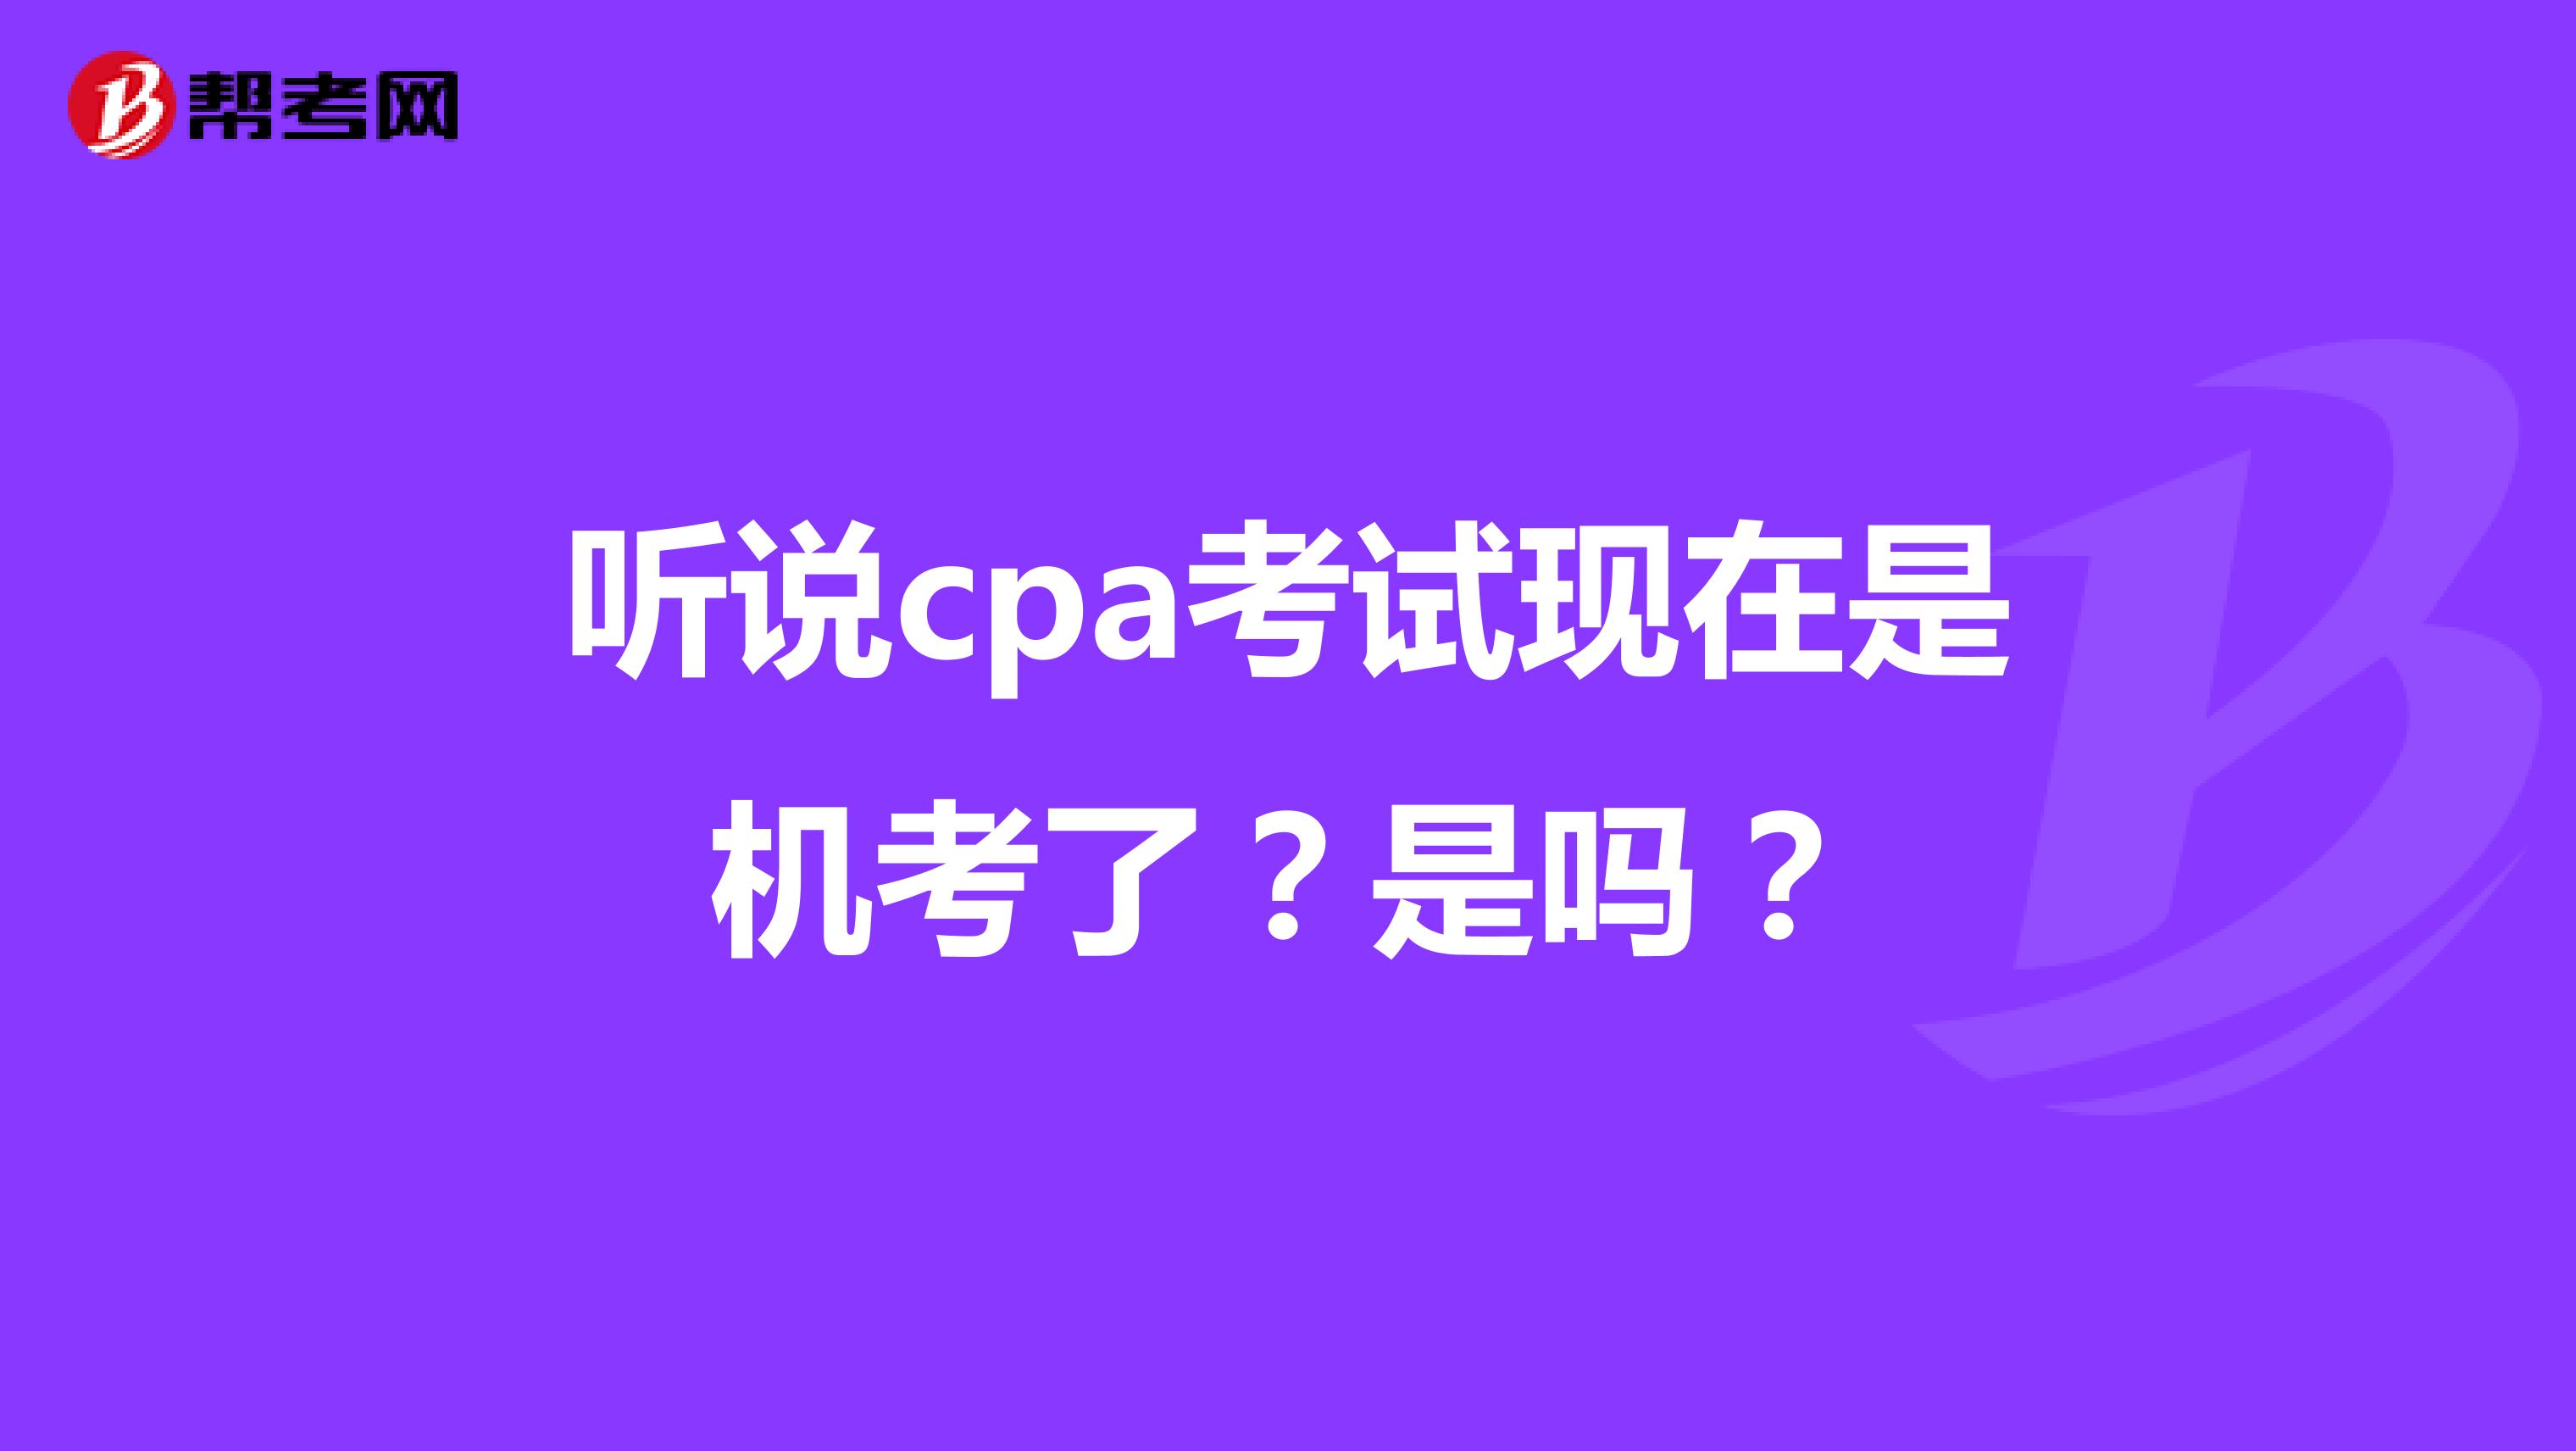 听说cpa考试现在是机考了？是吗？